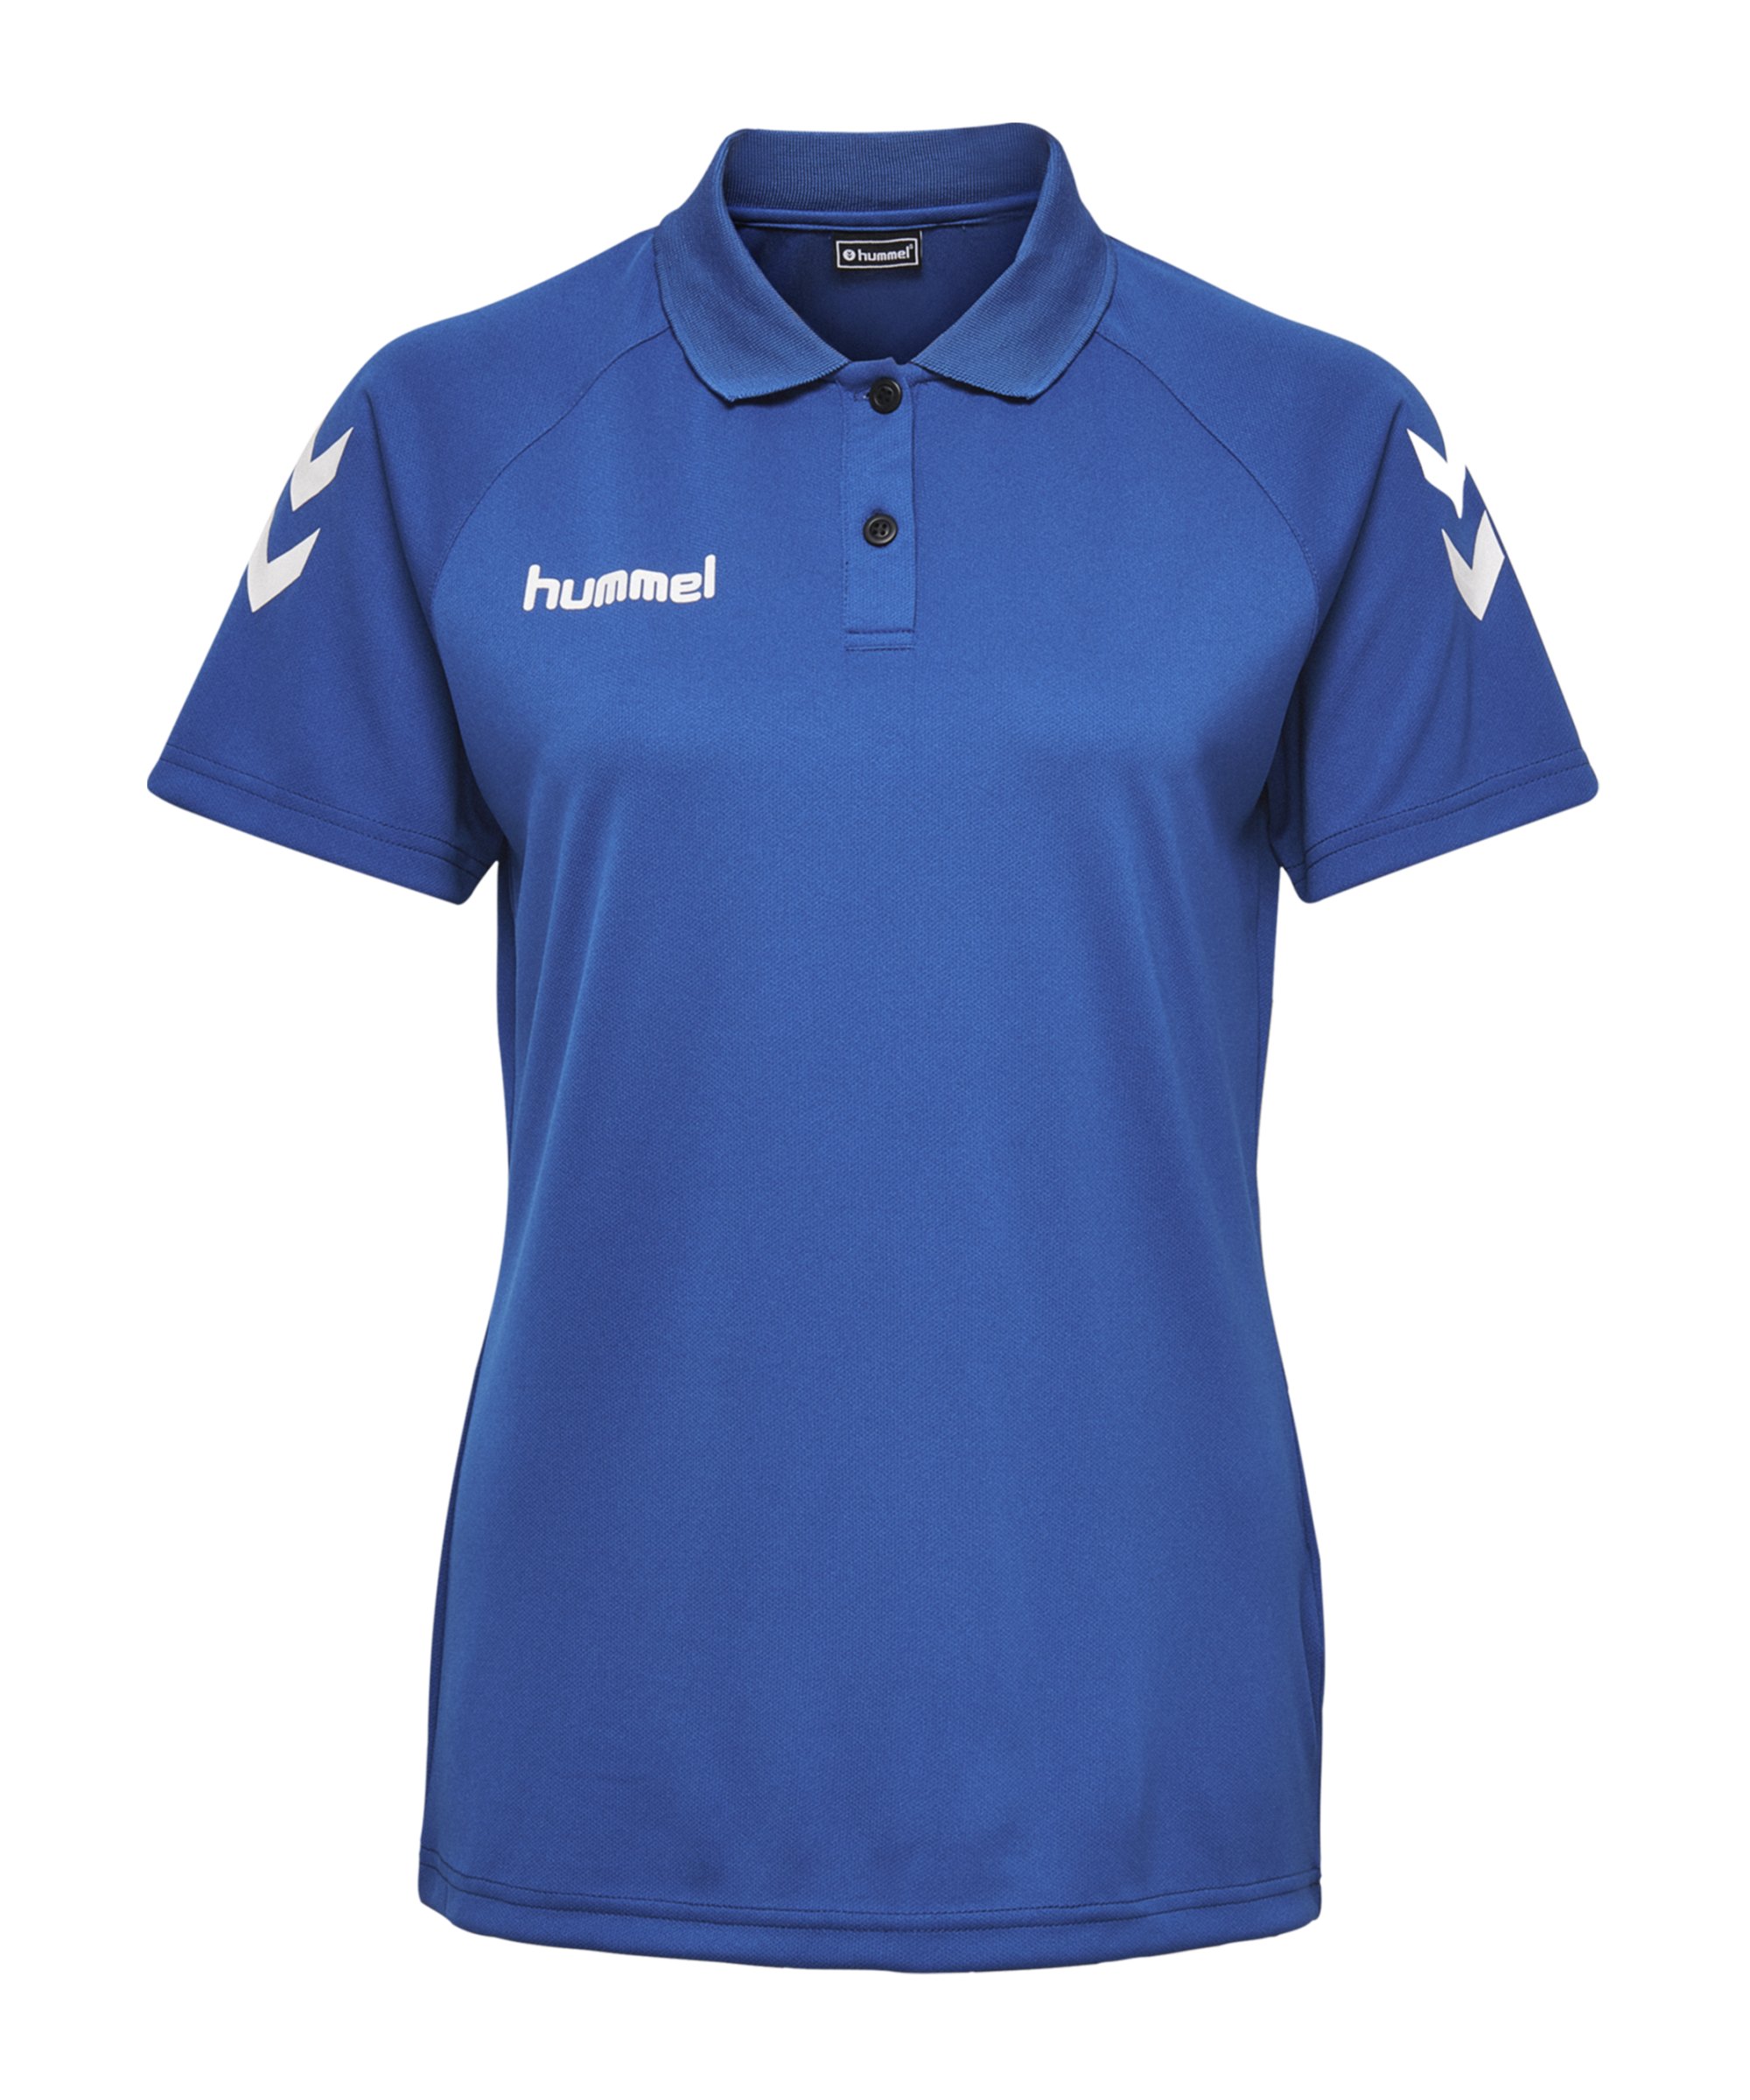 Hummel Core Functional Poloshirt Damen F7045 - blau